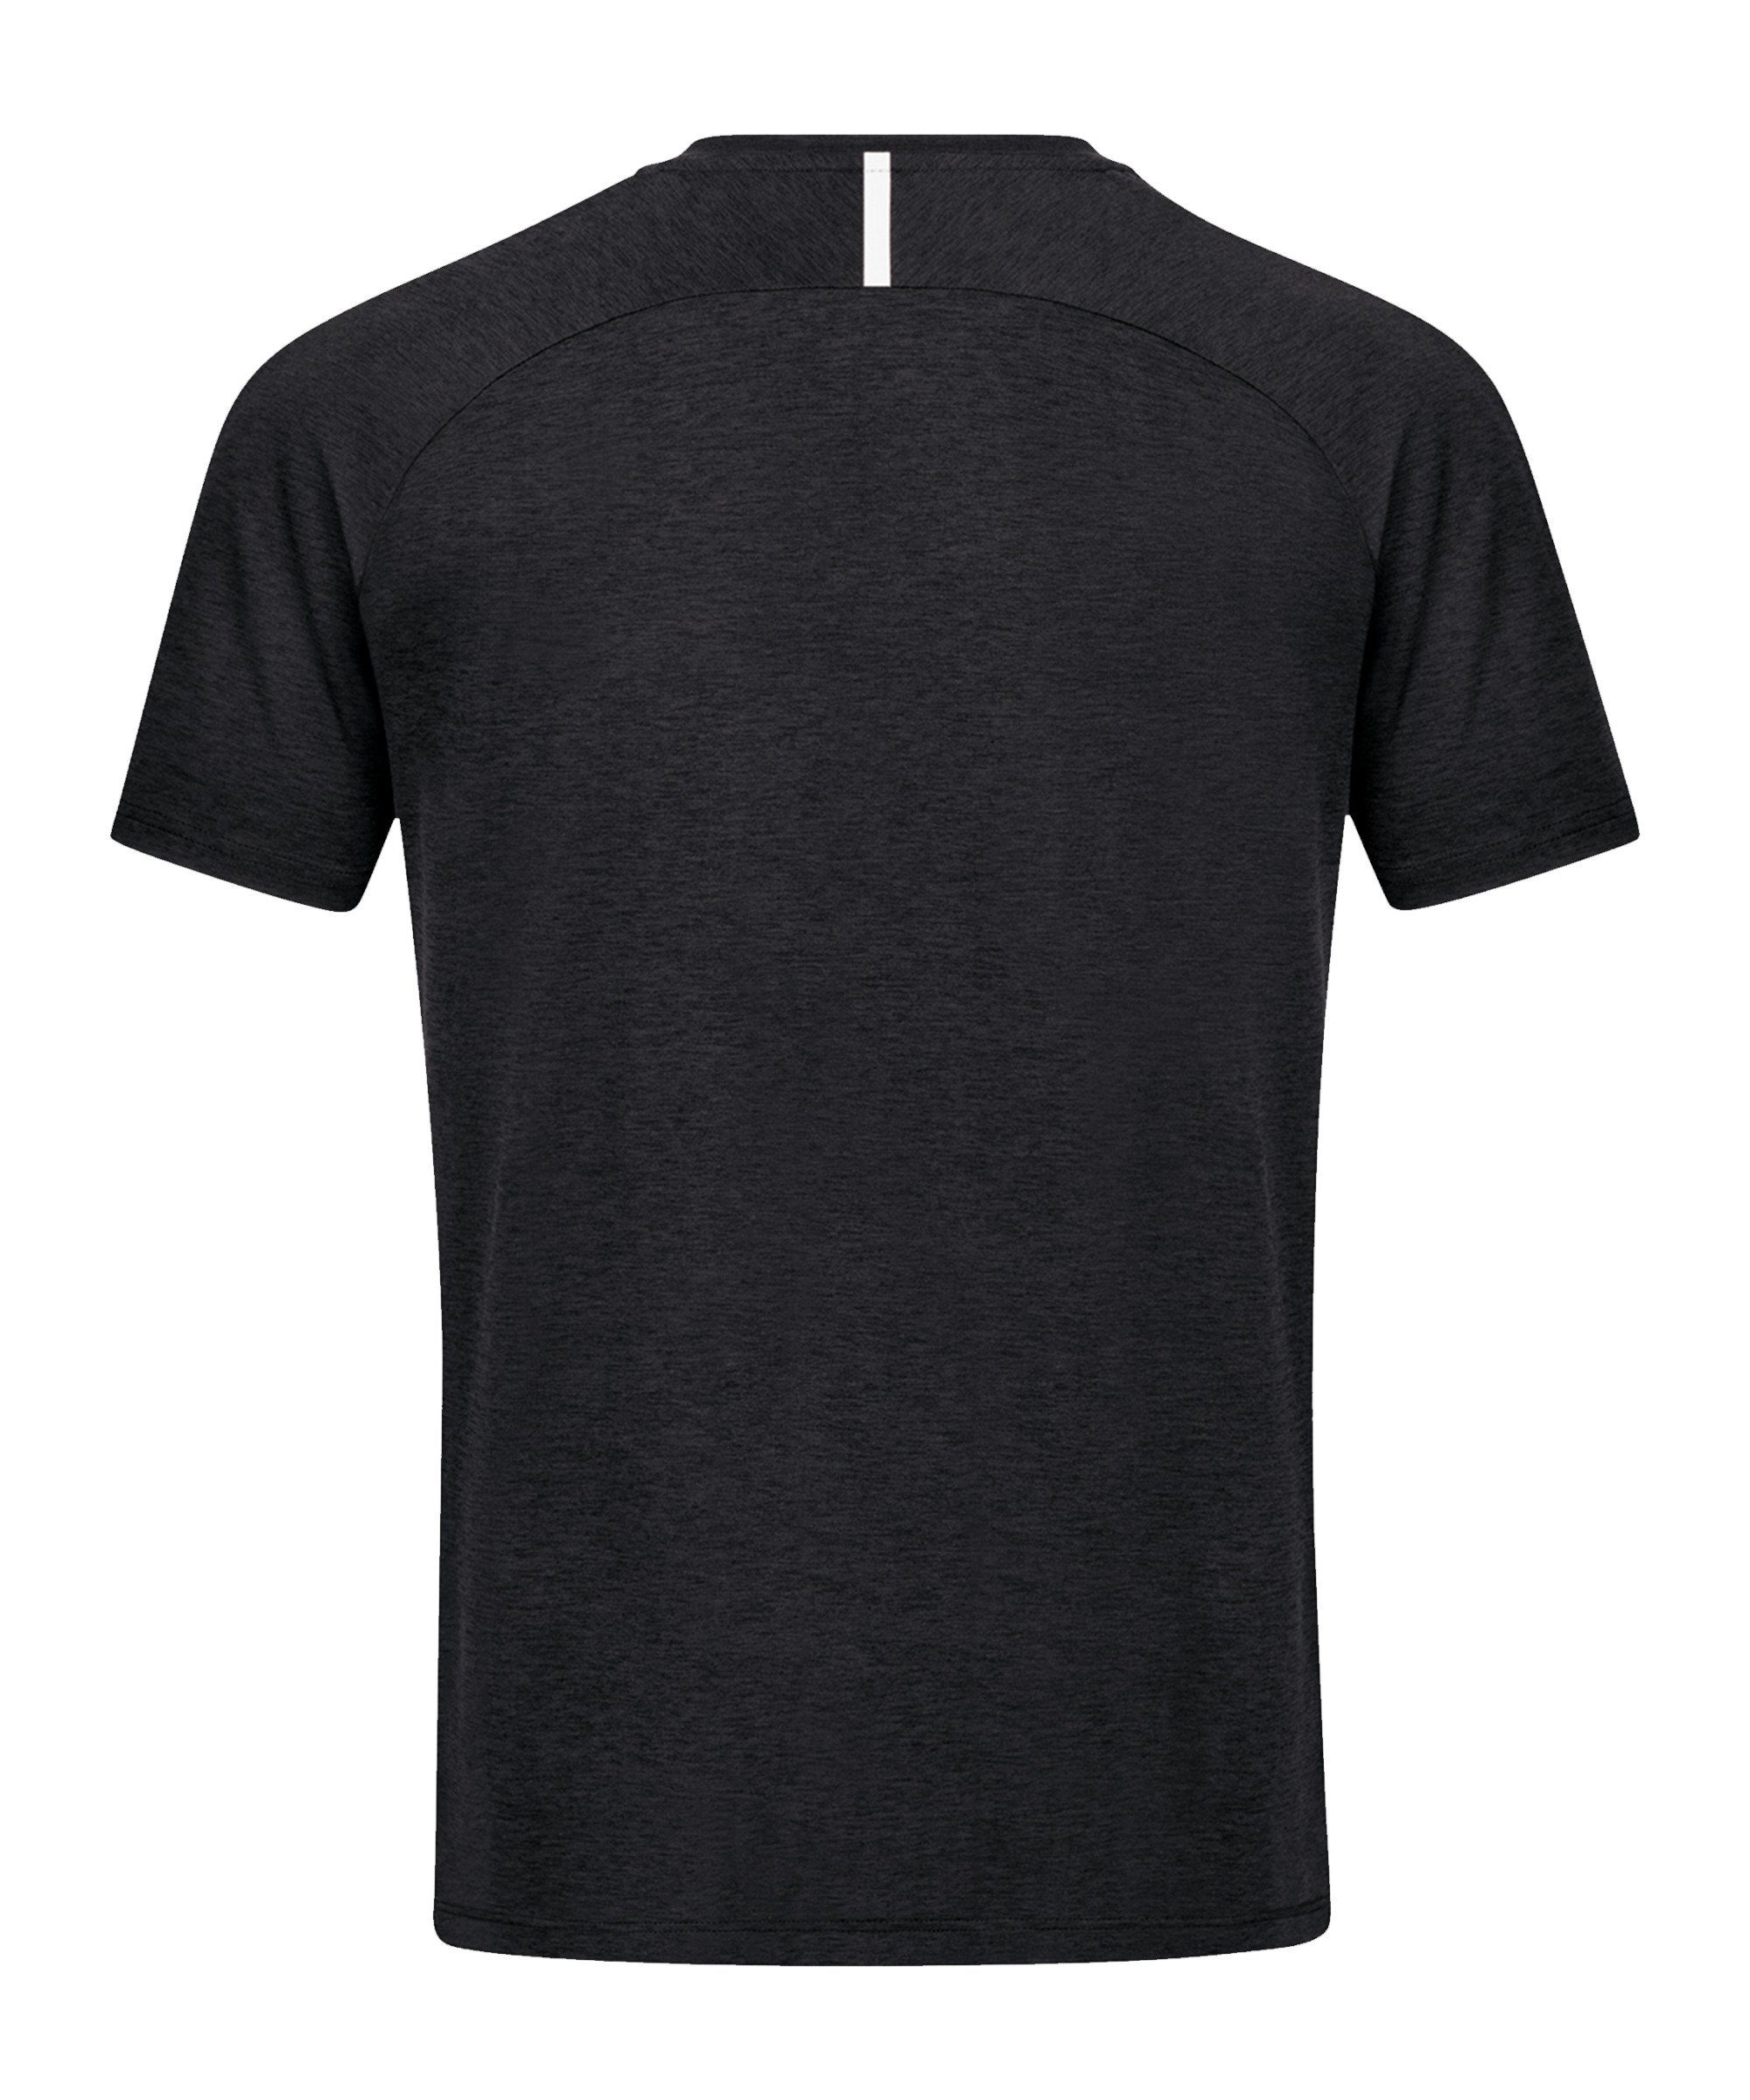 Jako T-Shirt Challenge schwarzweiss T-Shirt Freizeit default